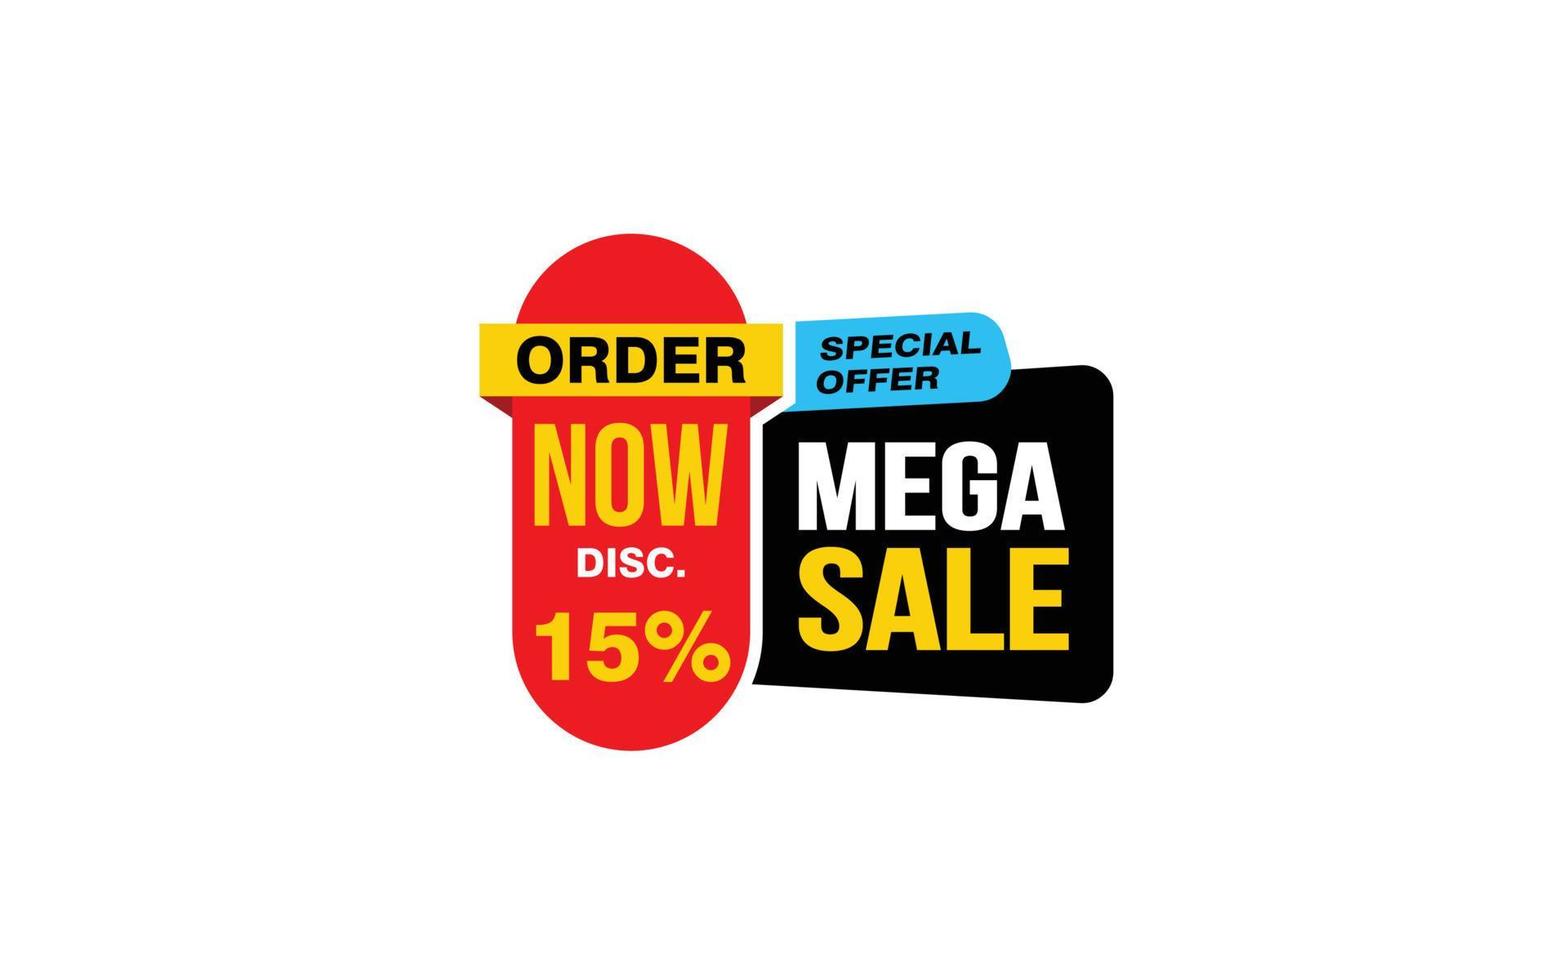 Oferta de mega venda de 15 por cento, liberação, layout de banner de promoção com estilo de adesivo. vetor